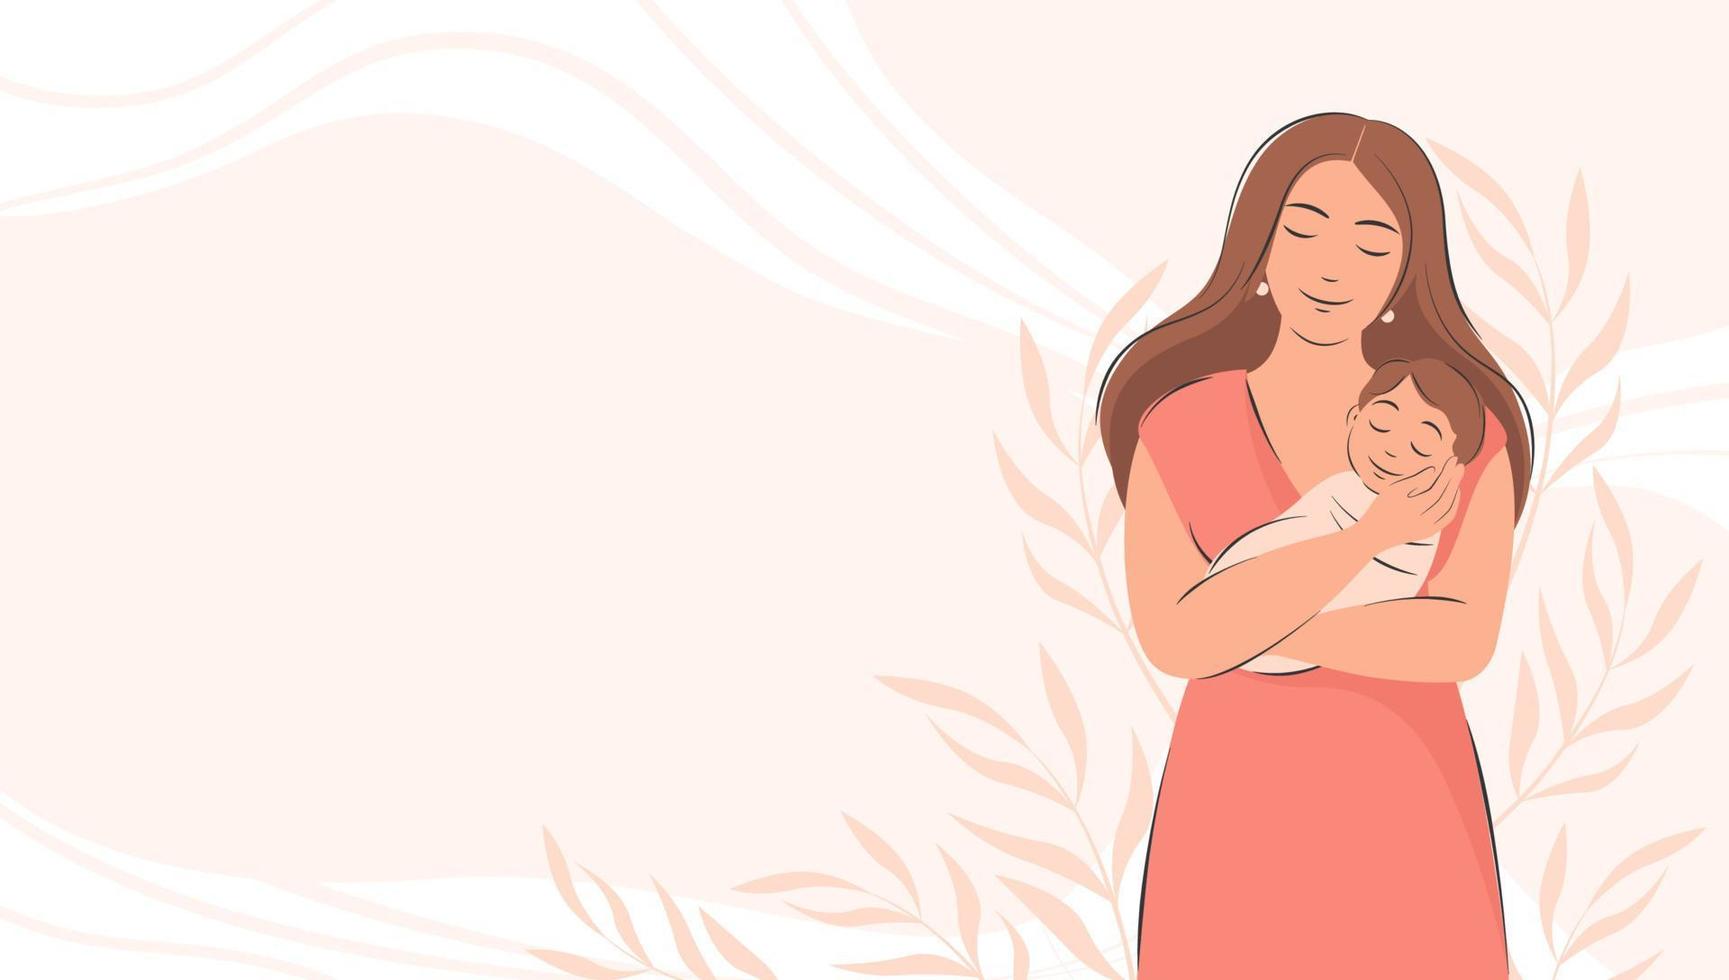 pancarta sobre el embarazo y la maternidad con lugar para el texto. mujer con bebé en sus brazos. feliz día de la madre. ilustración vectorial plana. vector